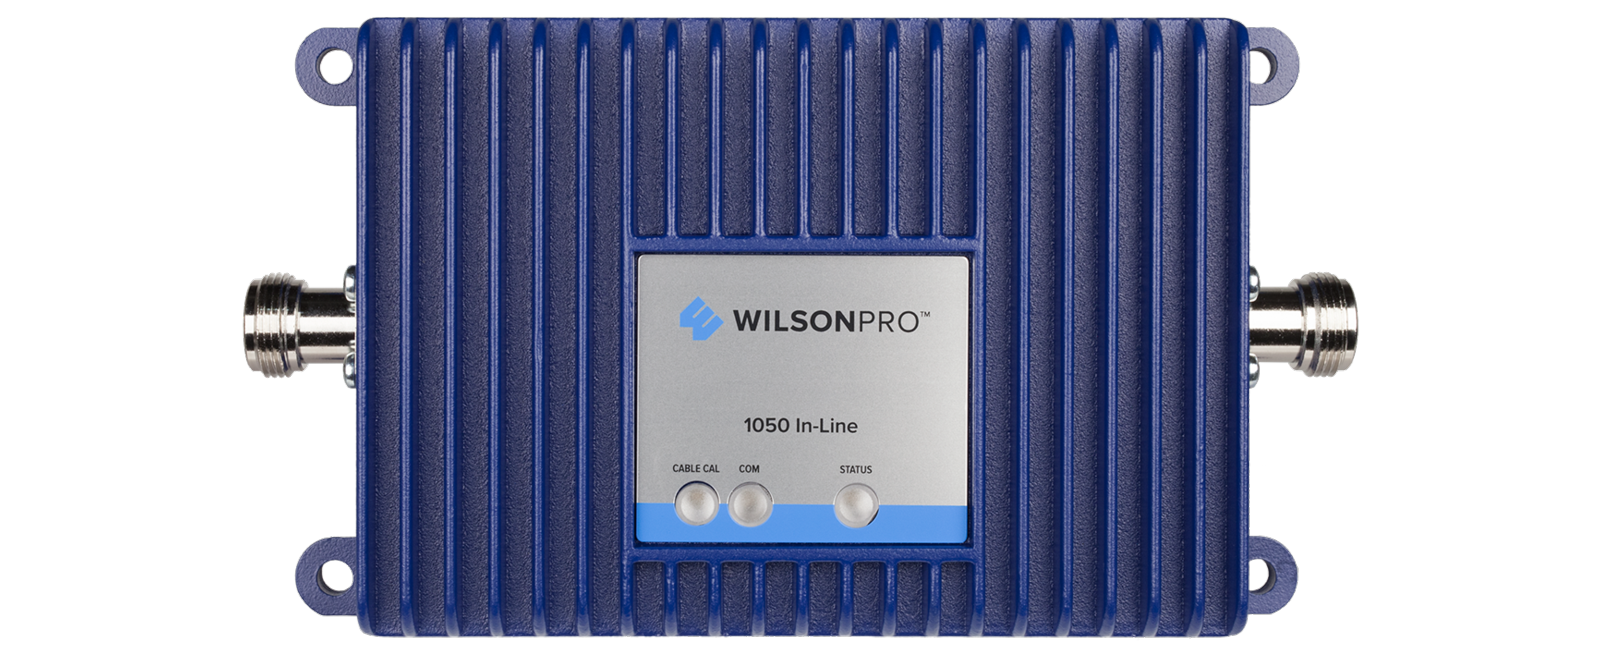 wilson electronics wilsonpro pro 1050 460230 in line front